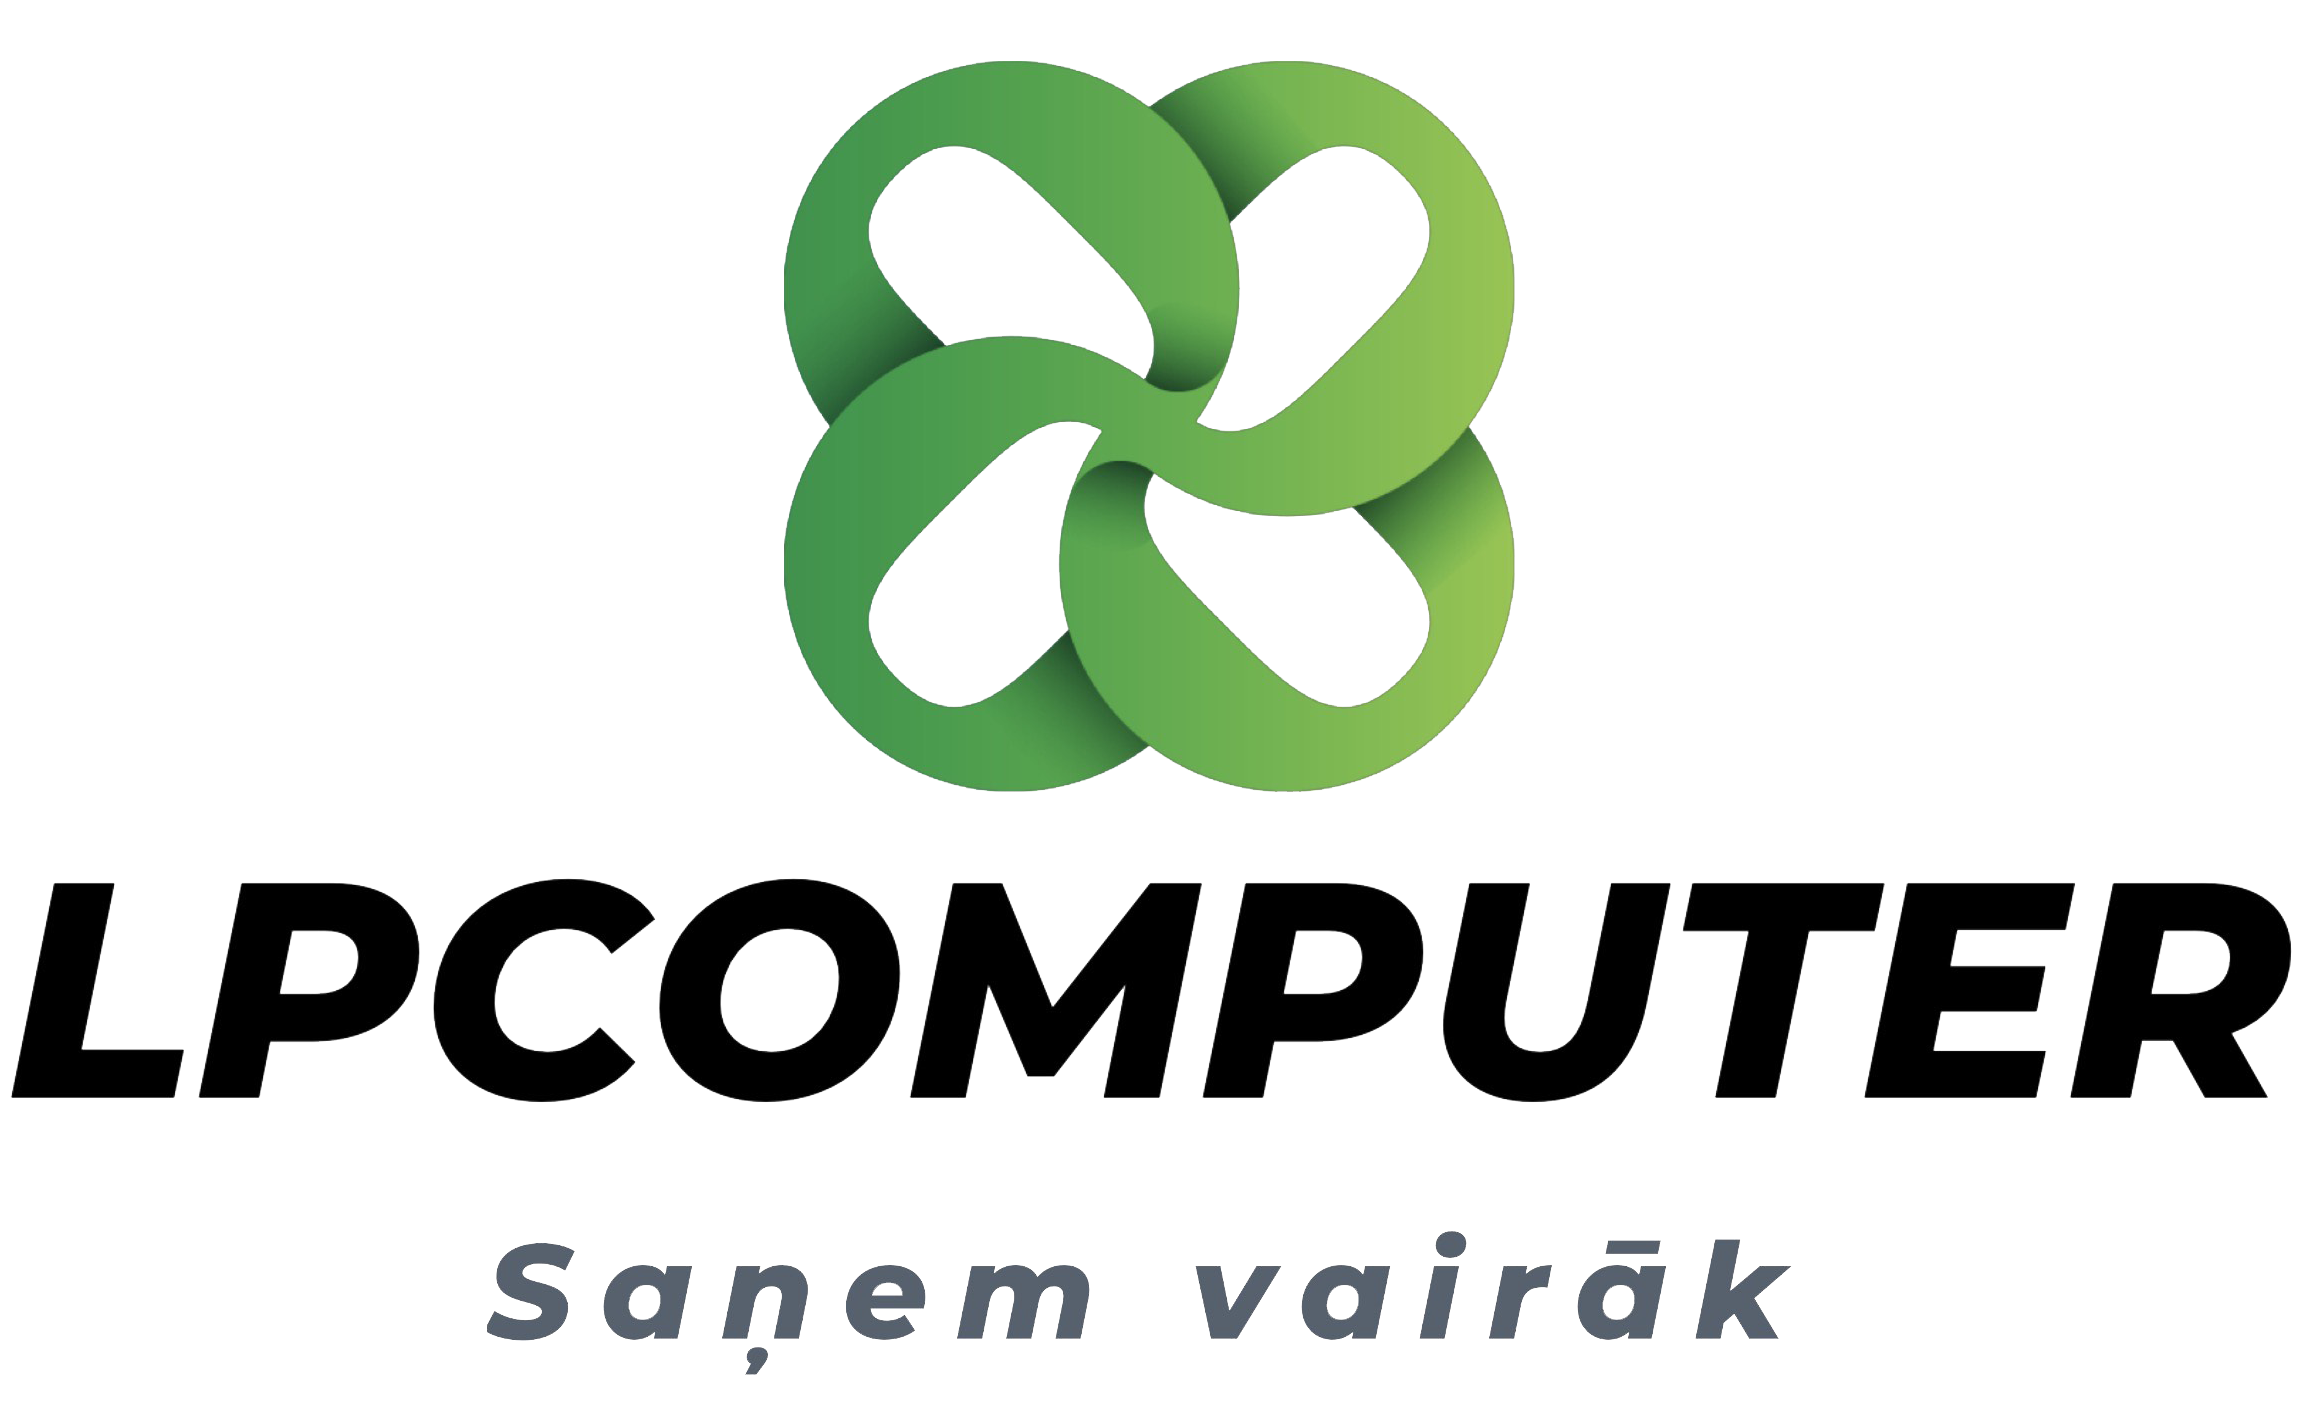 LP Computer